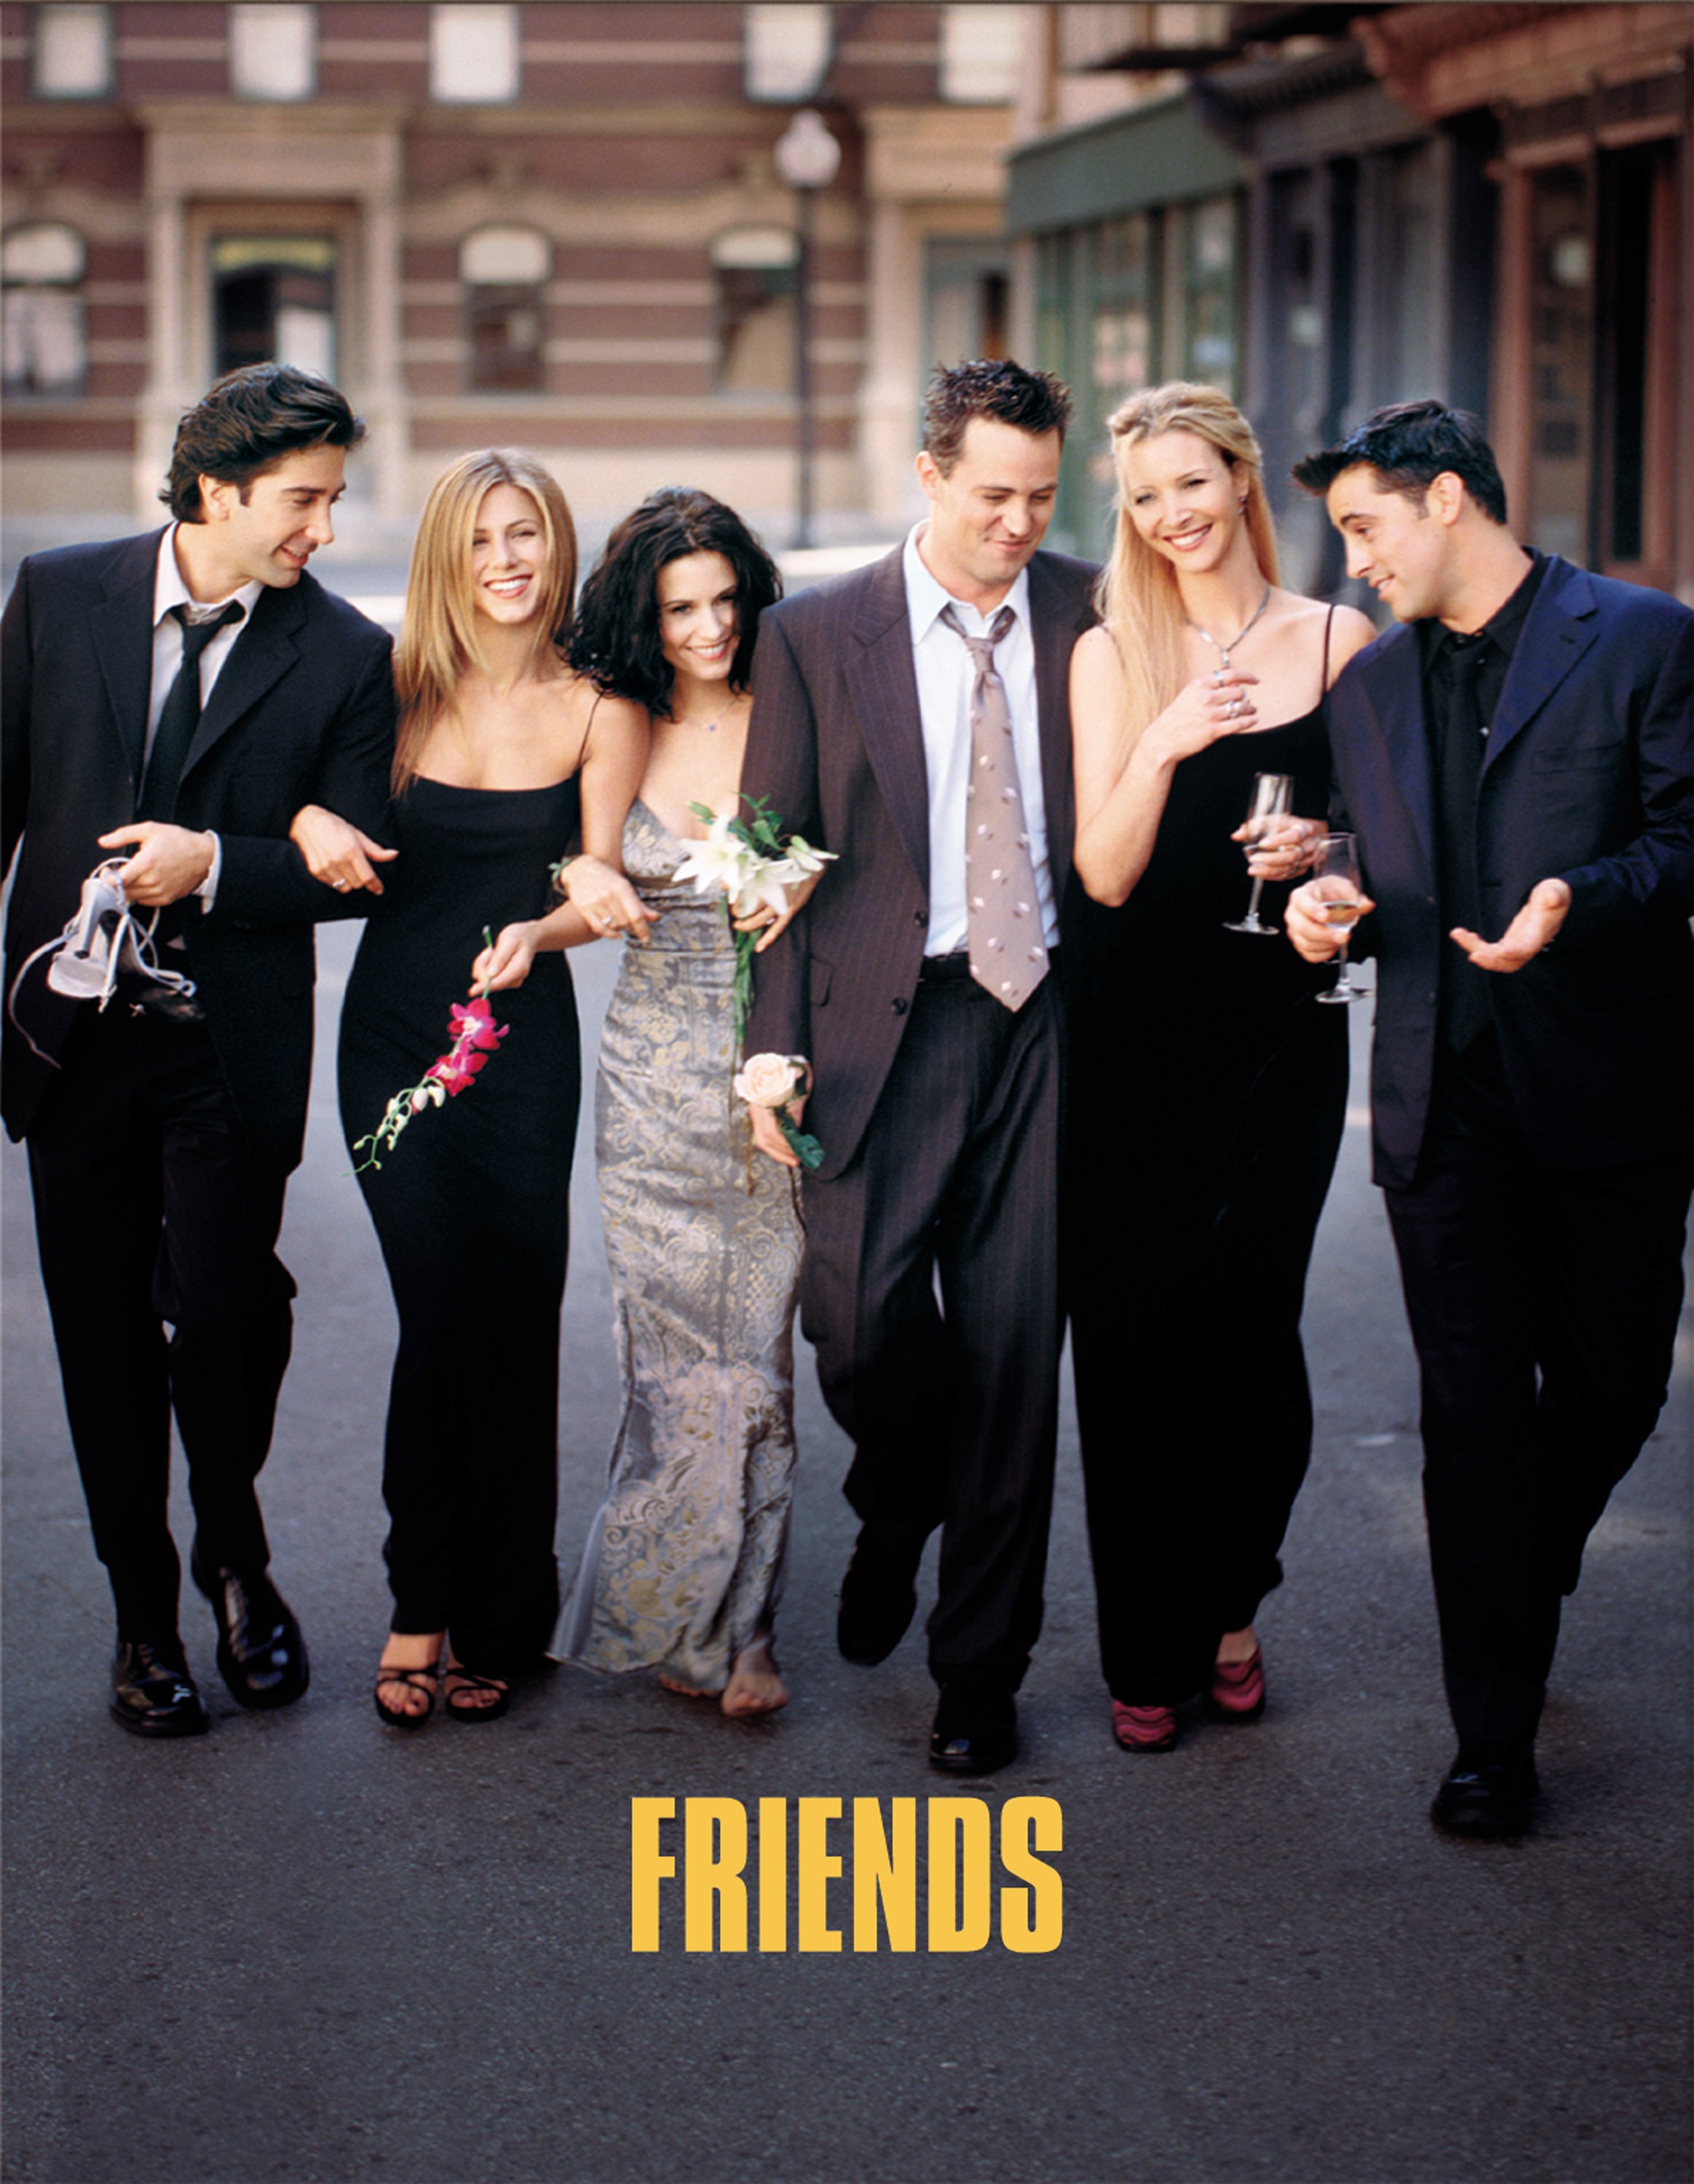 Friends-Darsteller, David Schwimmer, Jennifer Aniston, Courteney Cox, Matthew Perry, Lisa Kudrow und Matt Leblanc (von links nach rechts) | Quelle: Getty Images